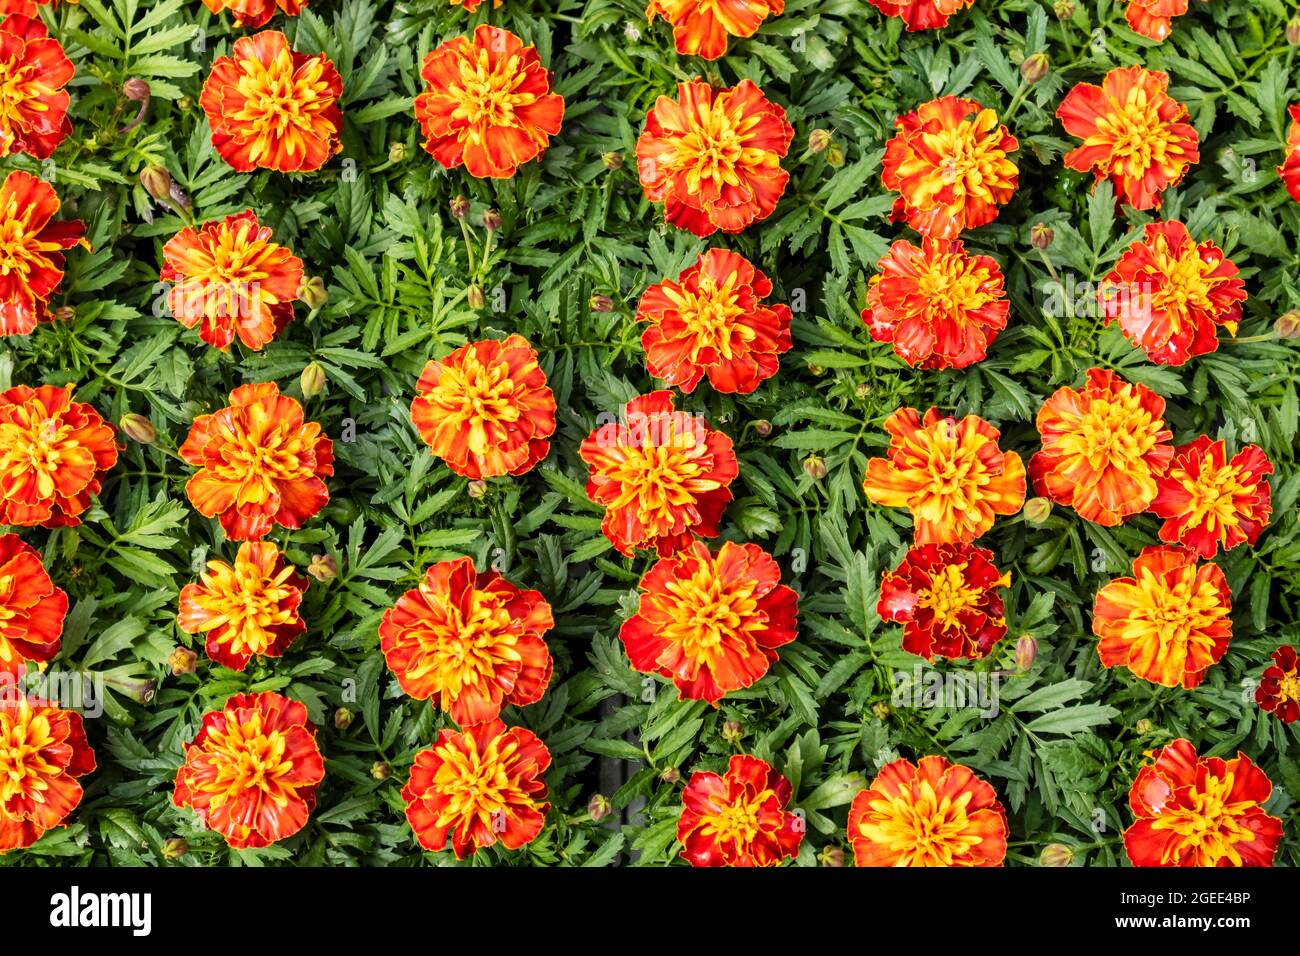 Colourful background of orange flowering Marigold plants. Stock Photo